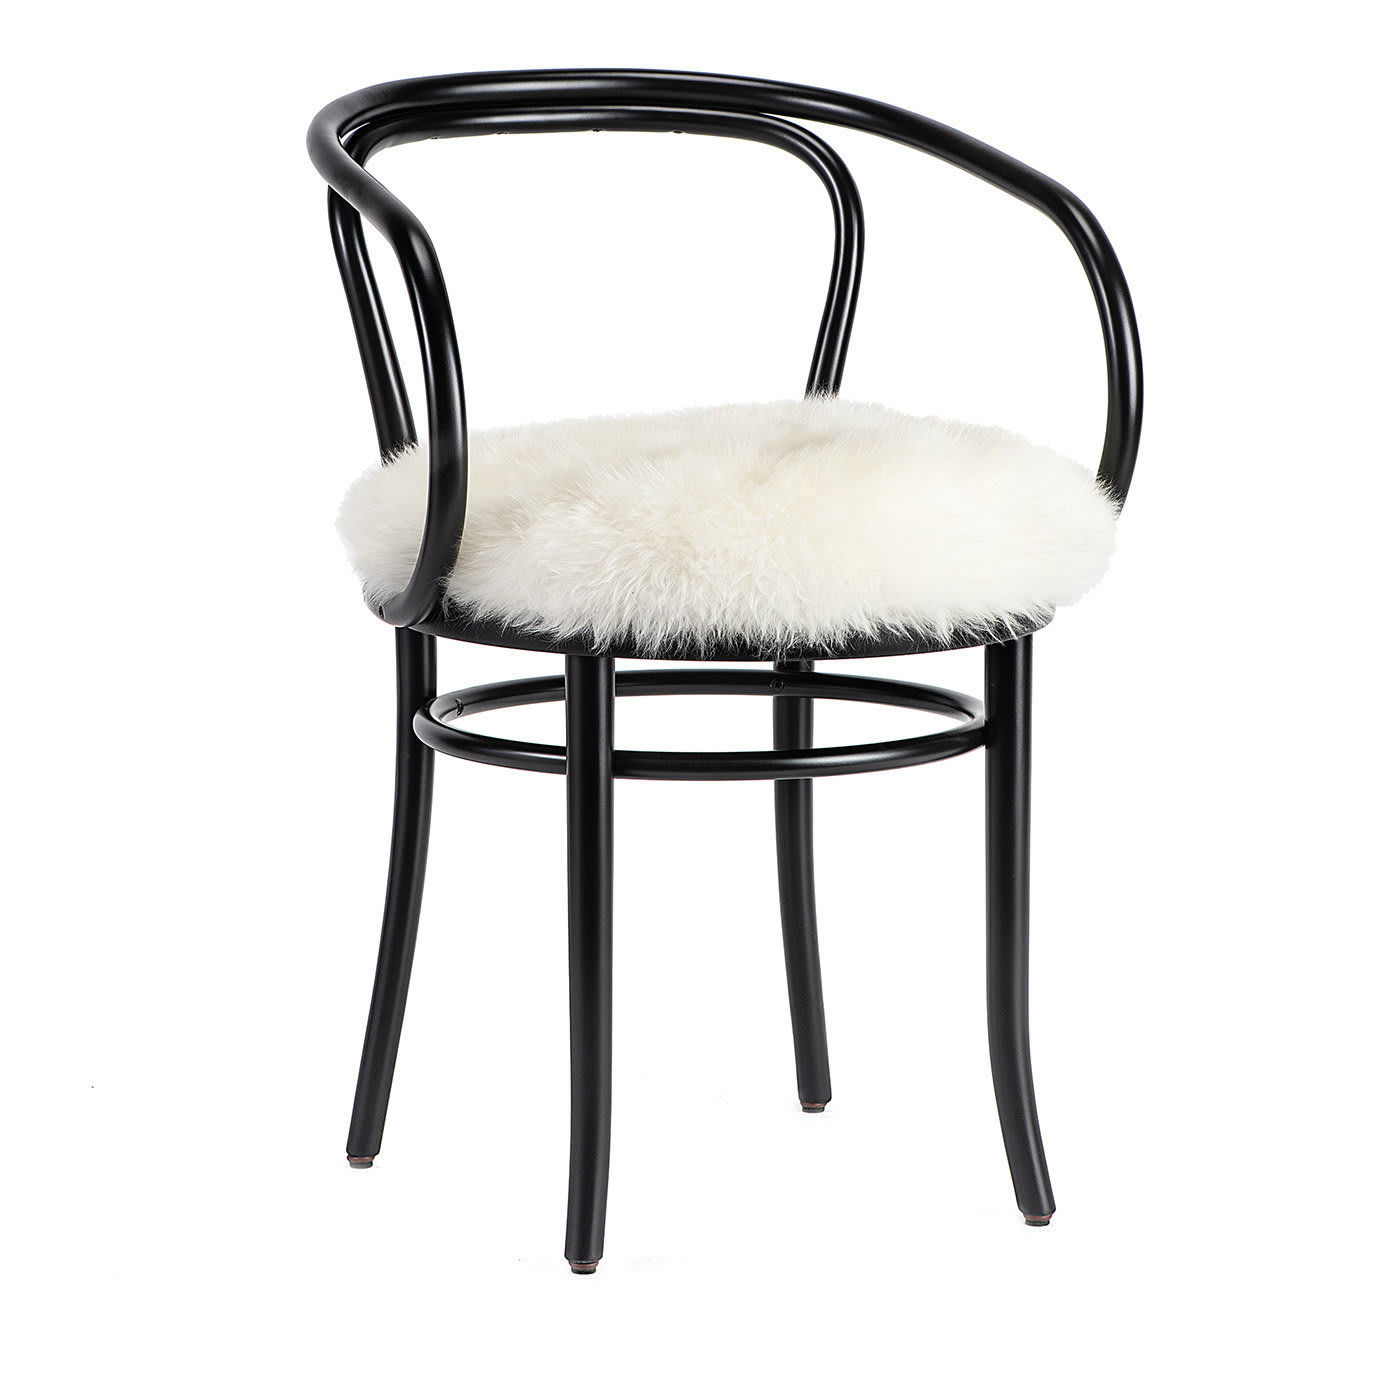 Wiener Stuhl Black Chair White Fur Seat by Gebrüder Thonet - Gebrüder Thonet Vienna GmbH (GTV) – Wiener GTV Design